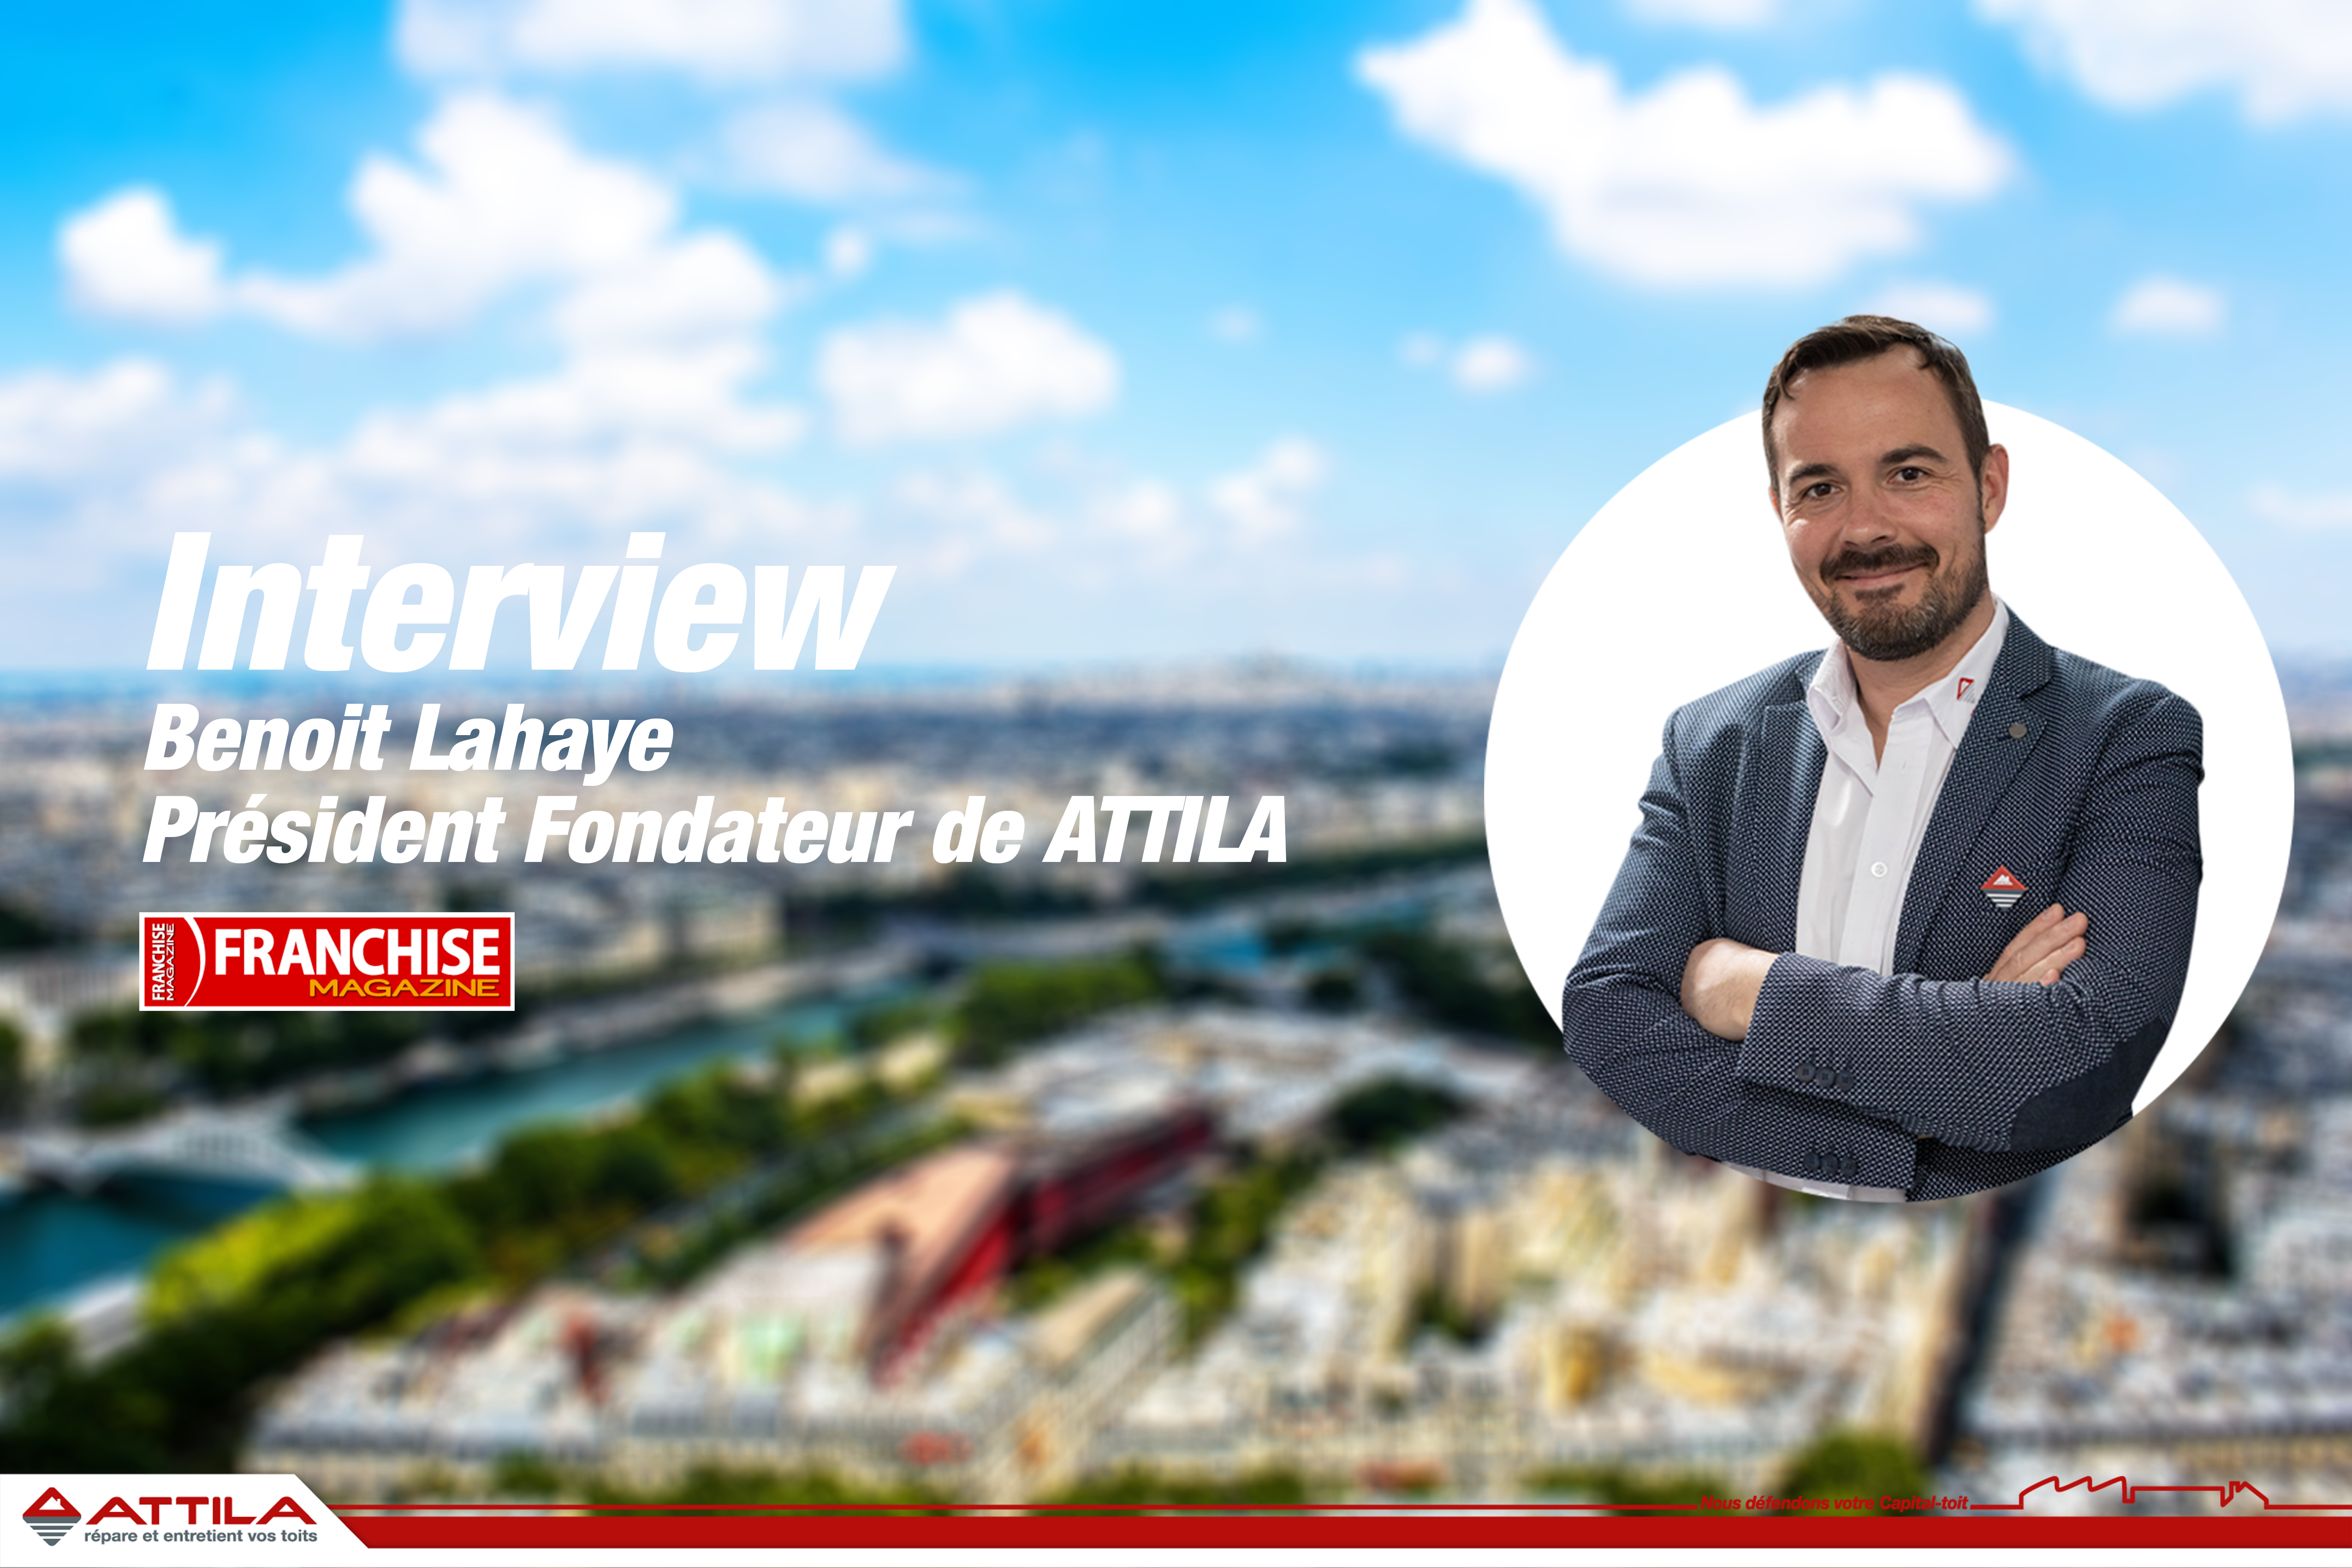 Interview de Benoit Lahaye sur Franchise Magazine